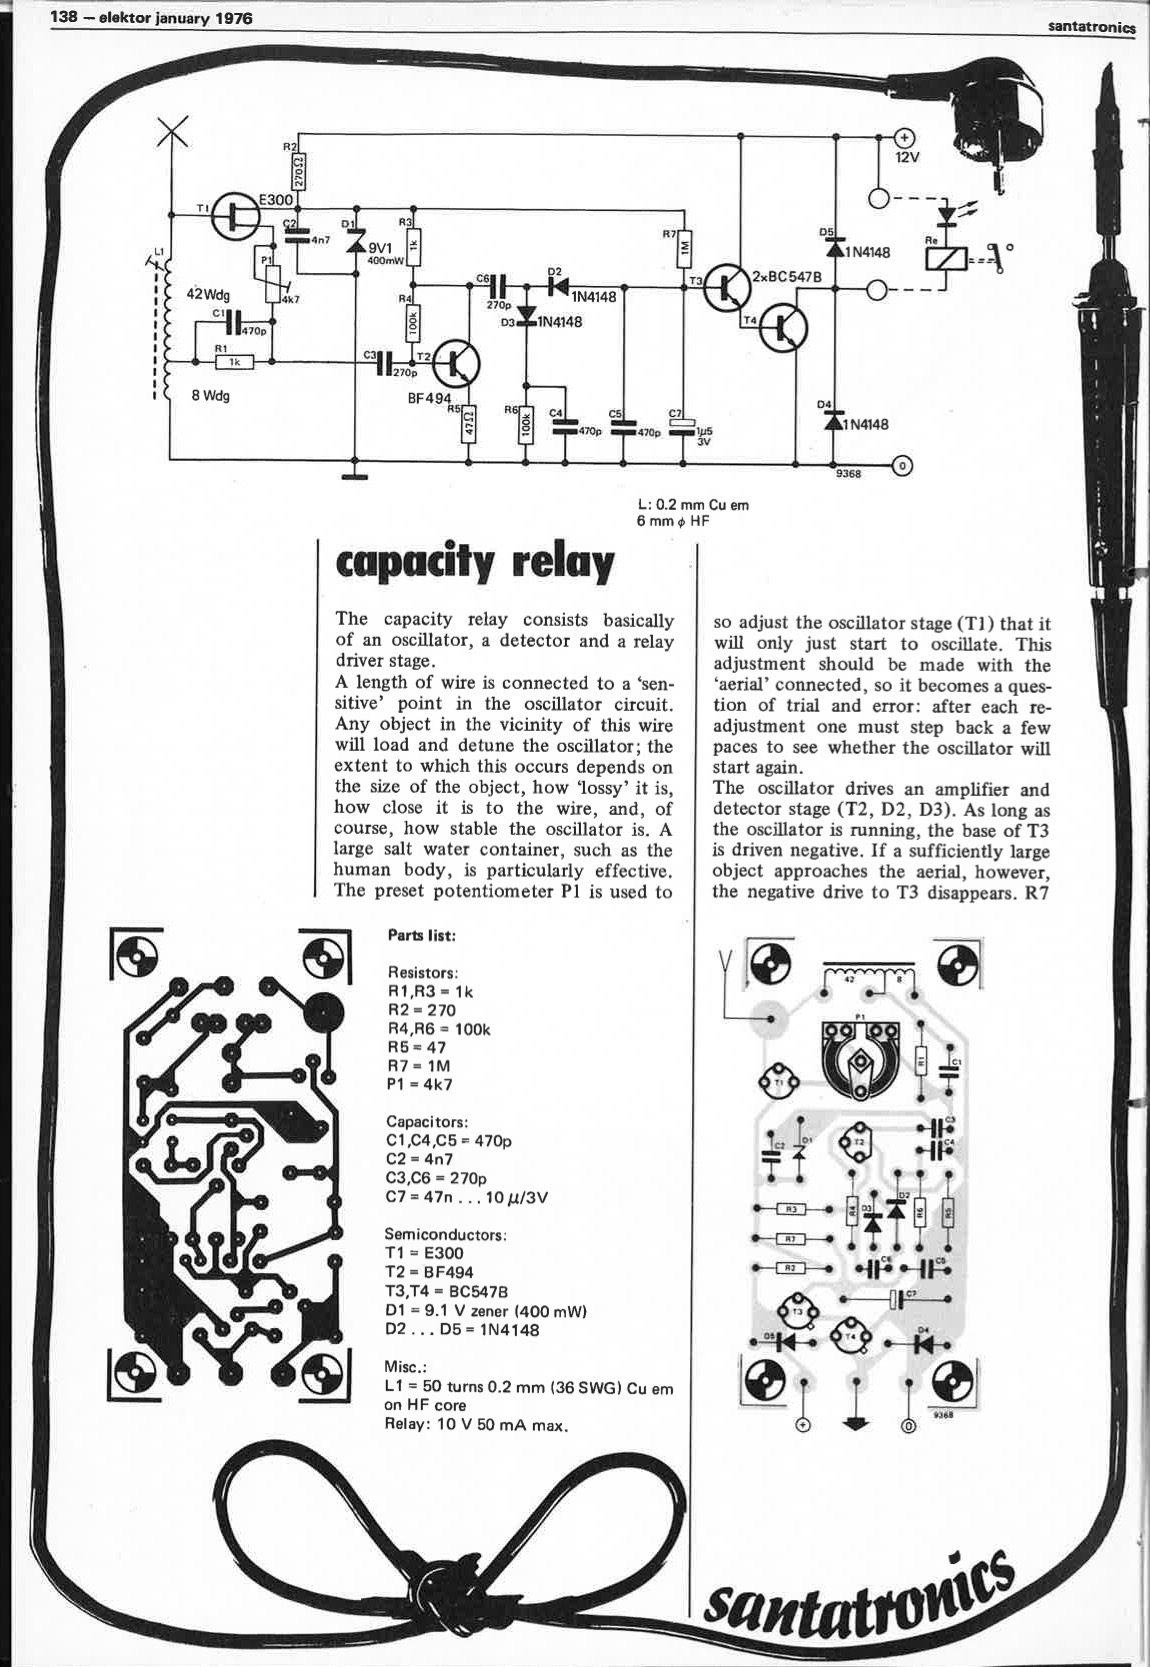 capacity relay